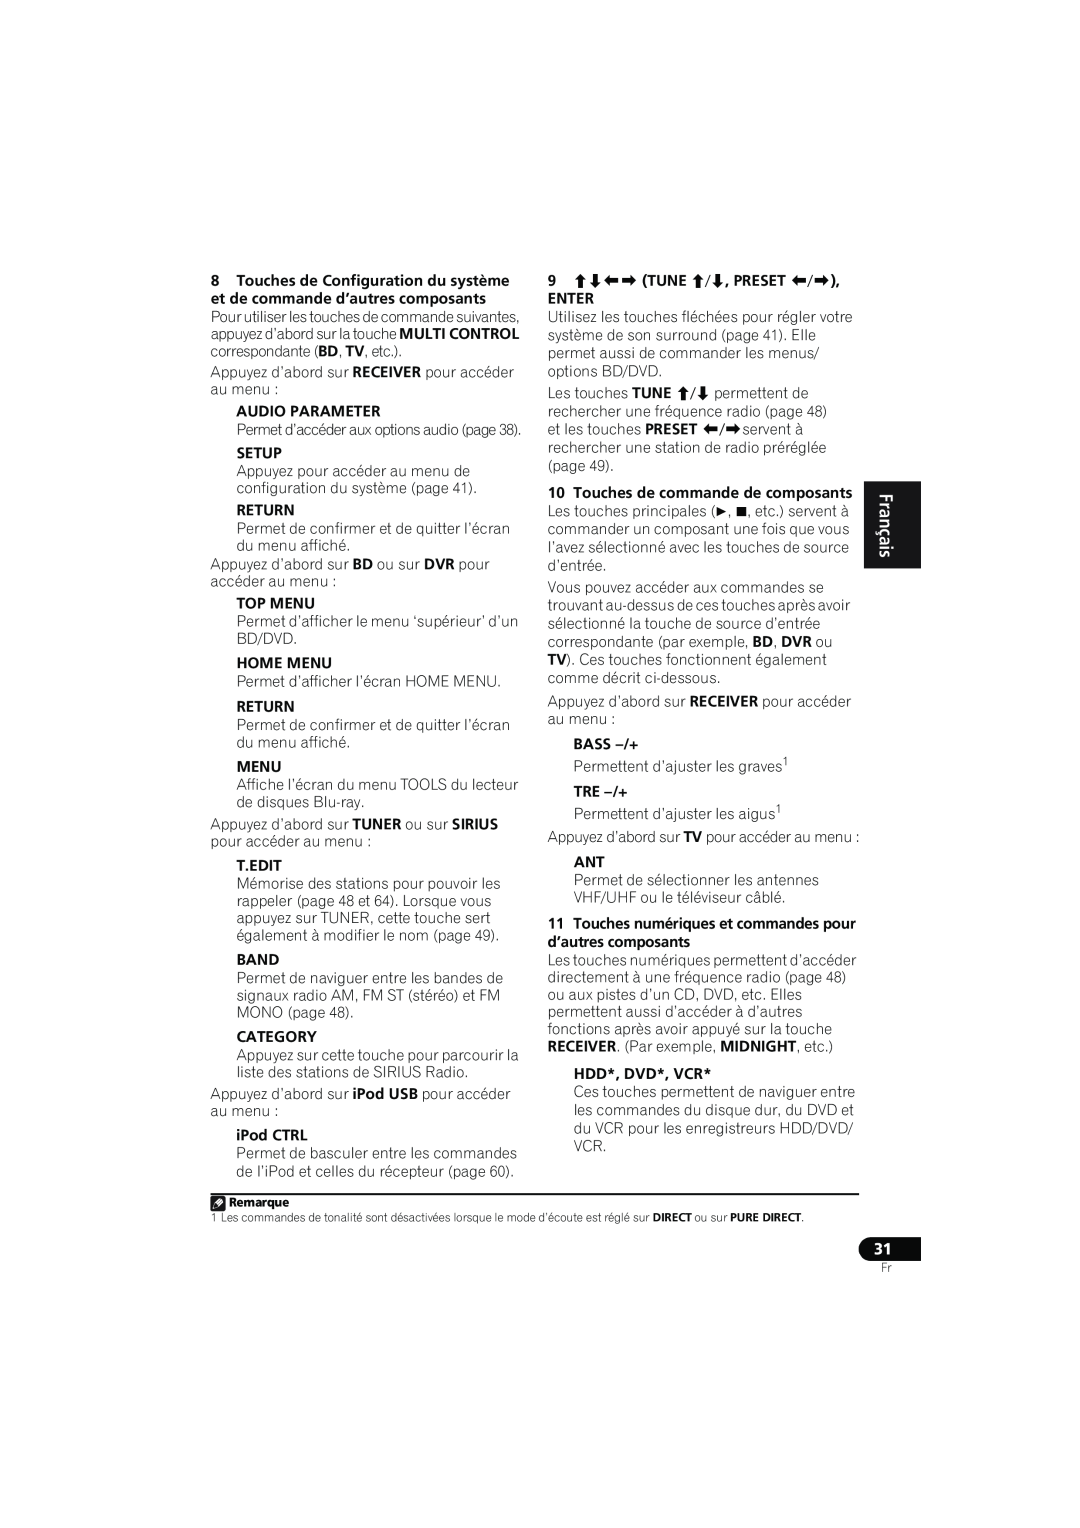 Pioneer VSX-819H-K manual English Français Español, Audio Parameter 